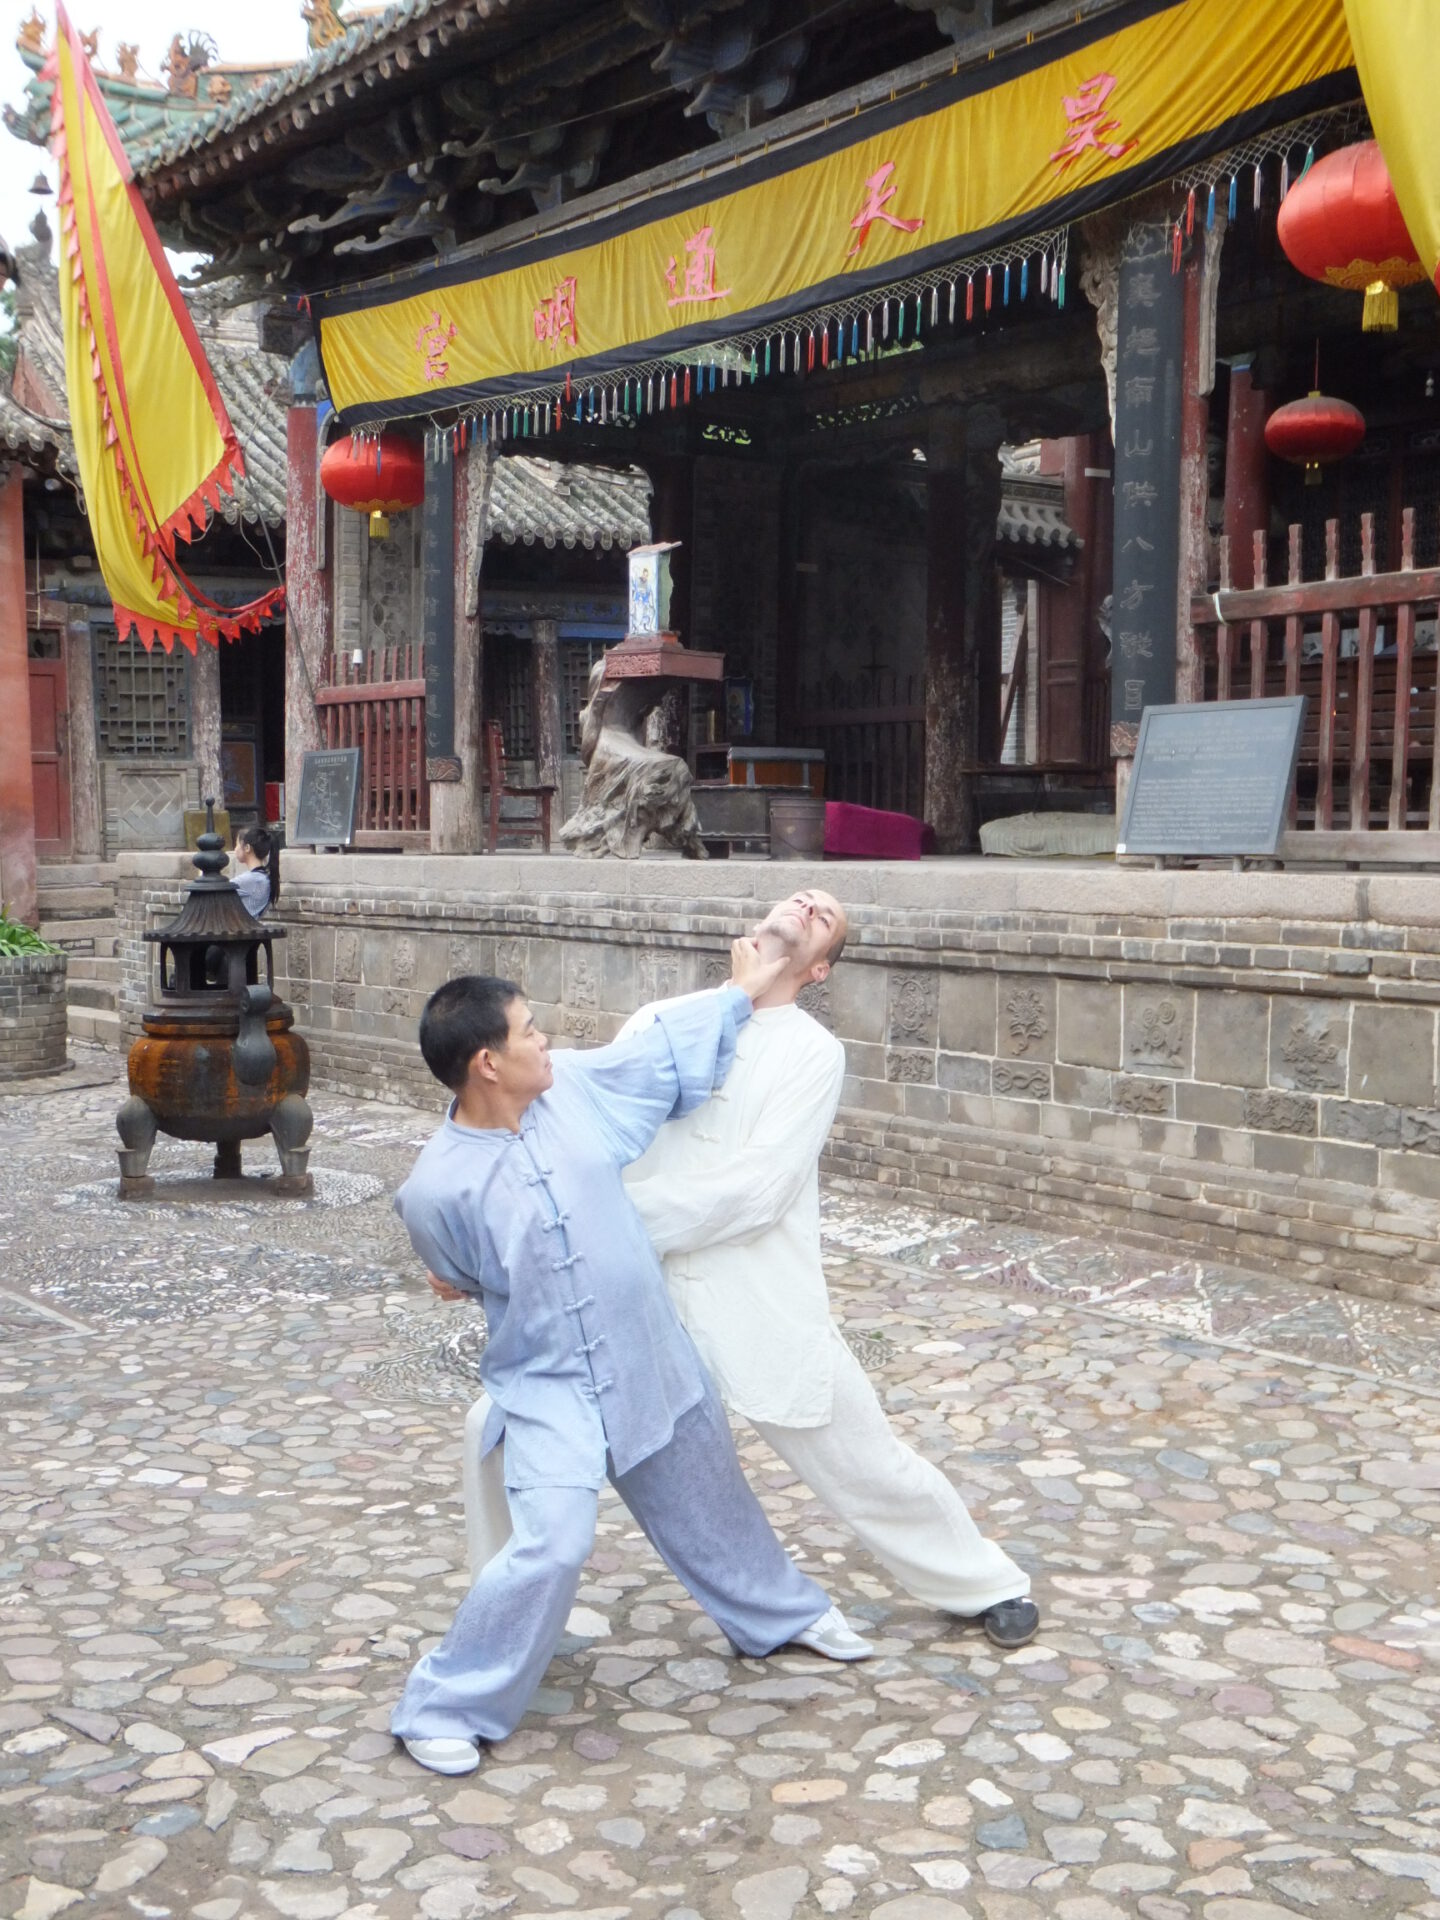 Training in China - Anwendungstraining mit Großmeister Shen Xijing im Kloster der Jadequelle